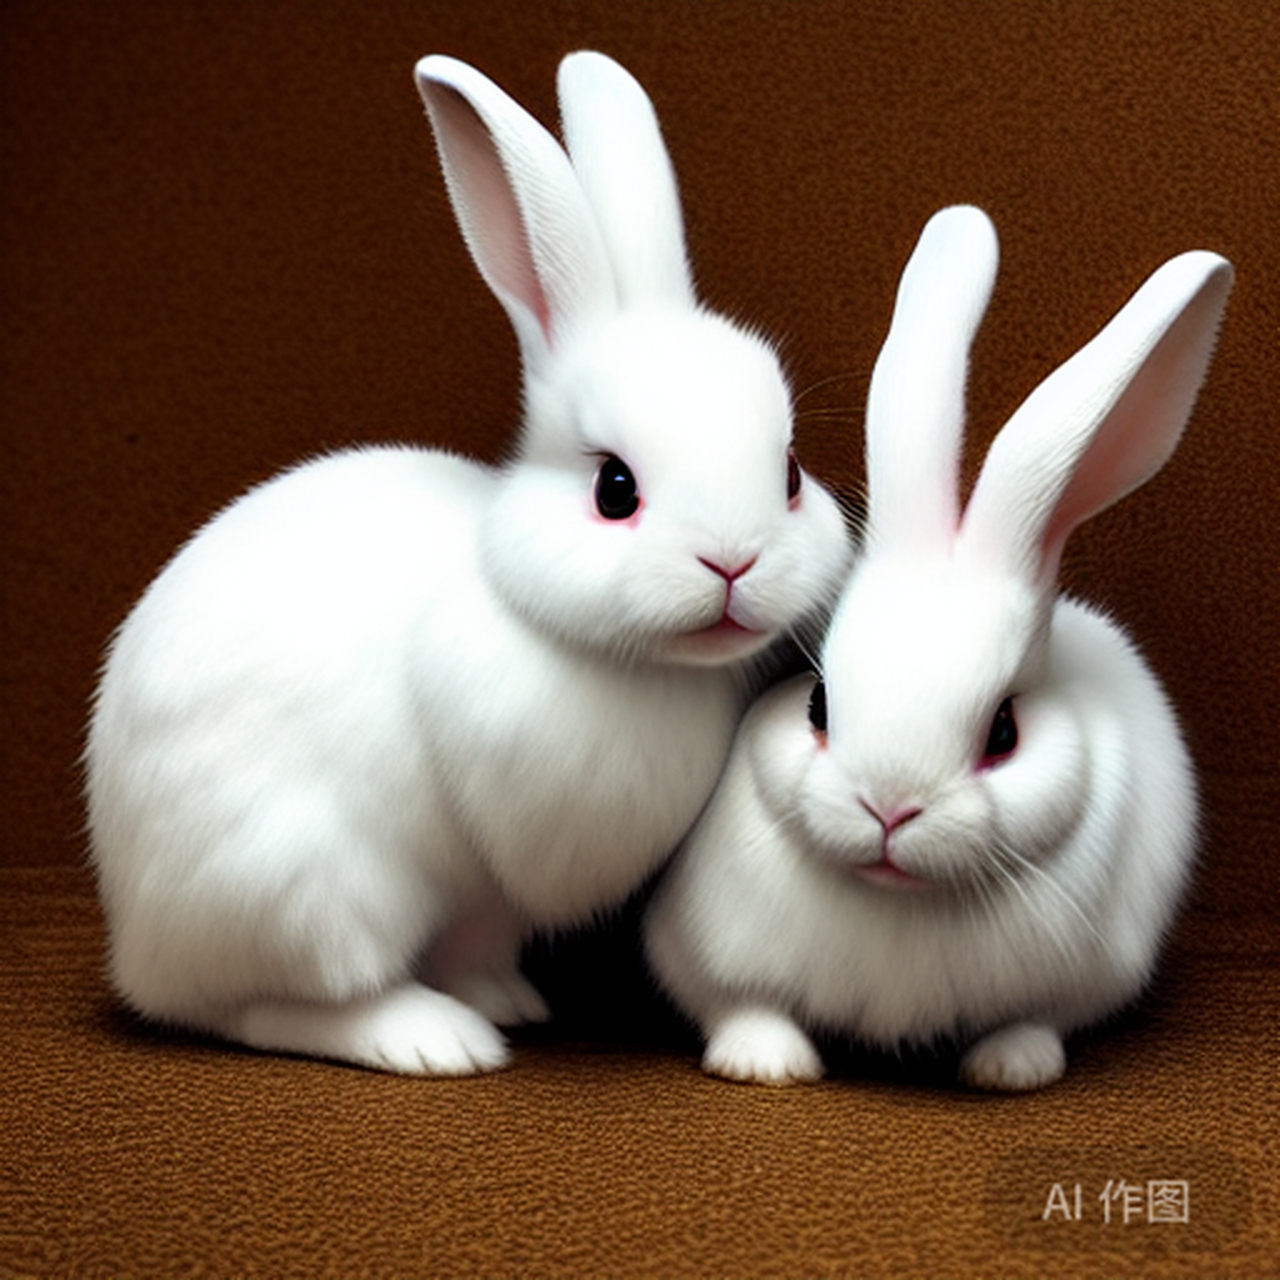 小兔子的品种有很多,有垂耳兔,海棠兔,侏儒兔,西施兔,狮子兔等